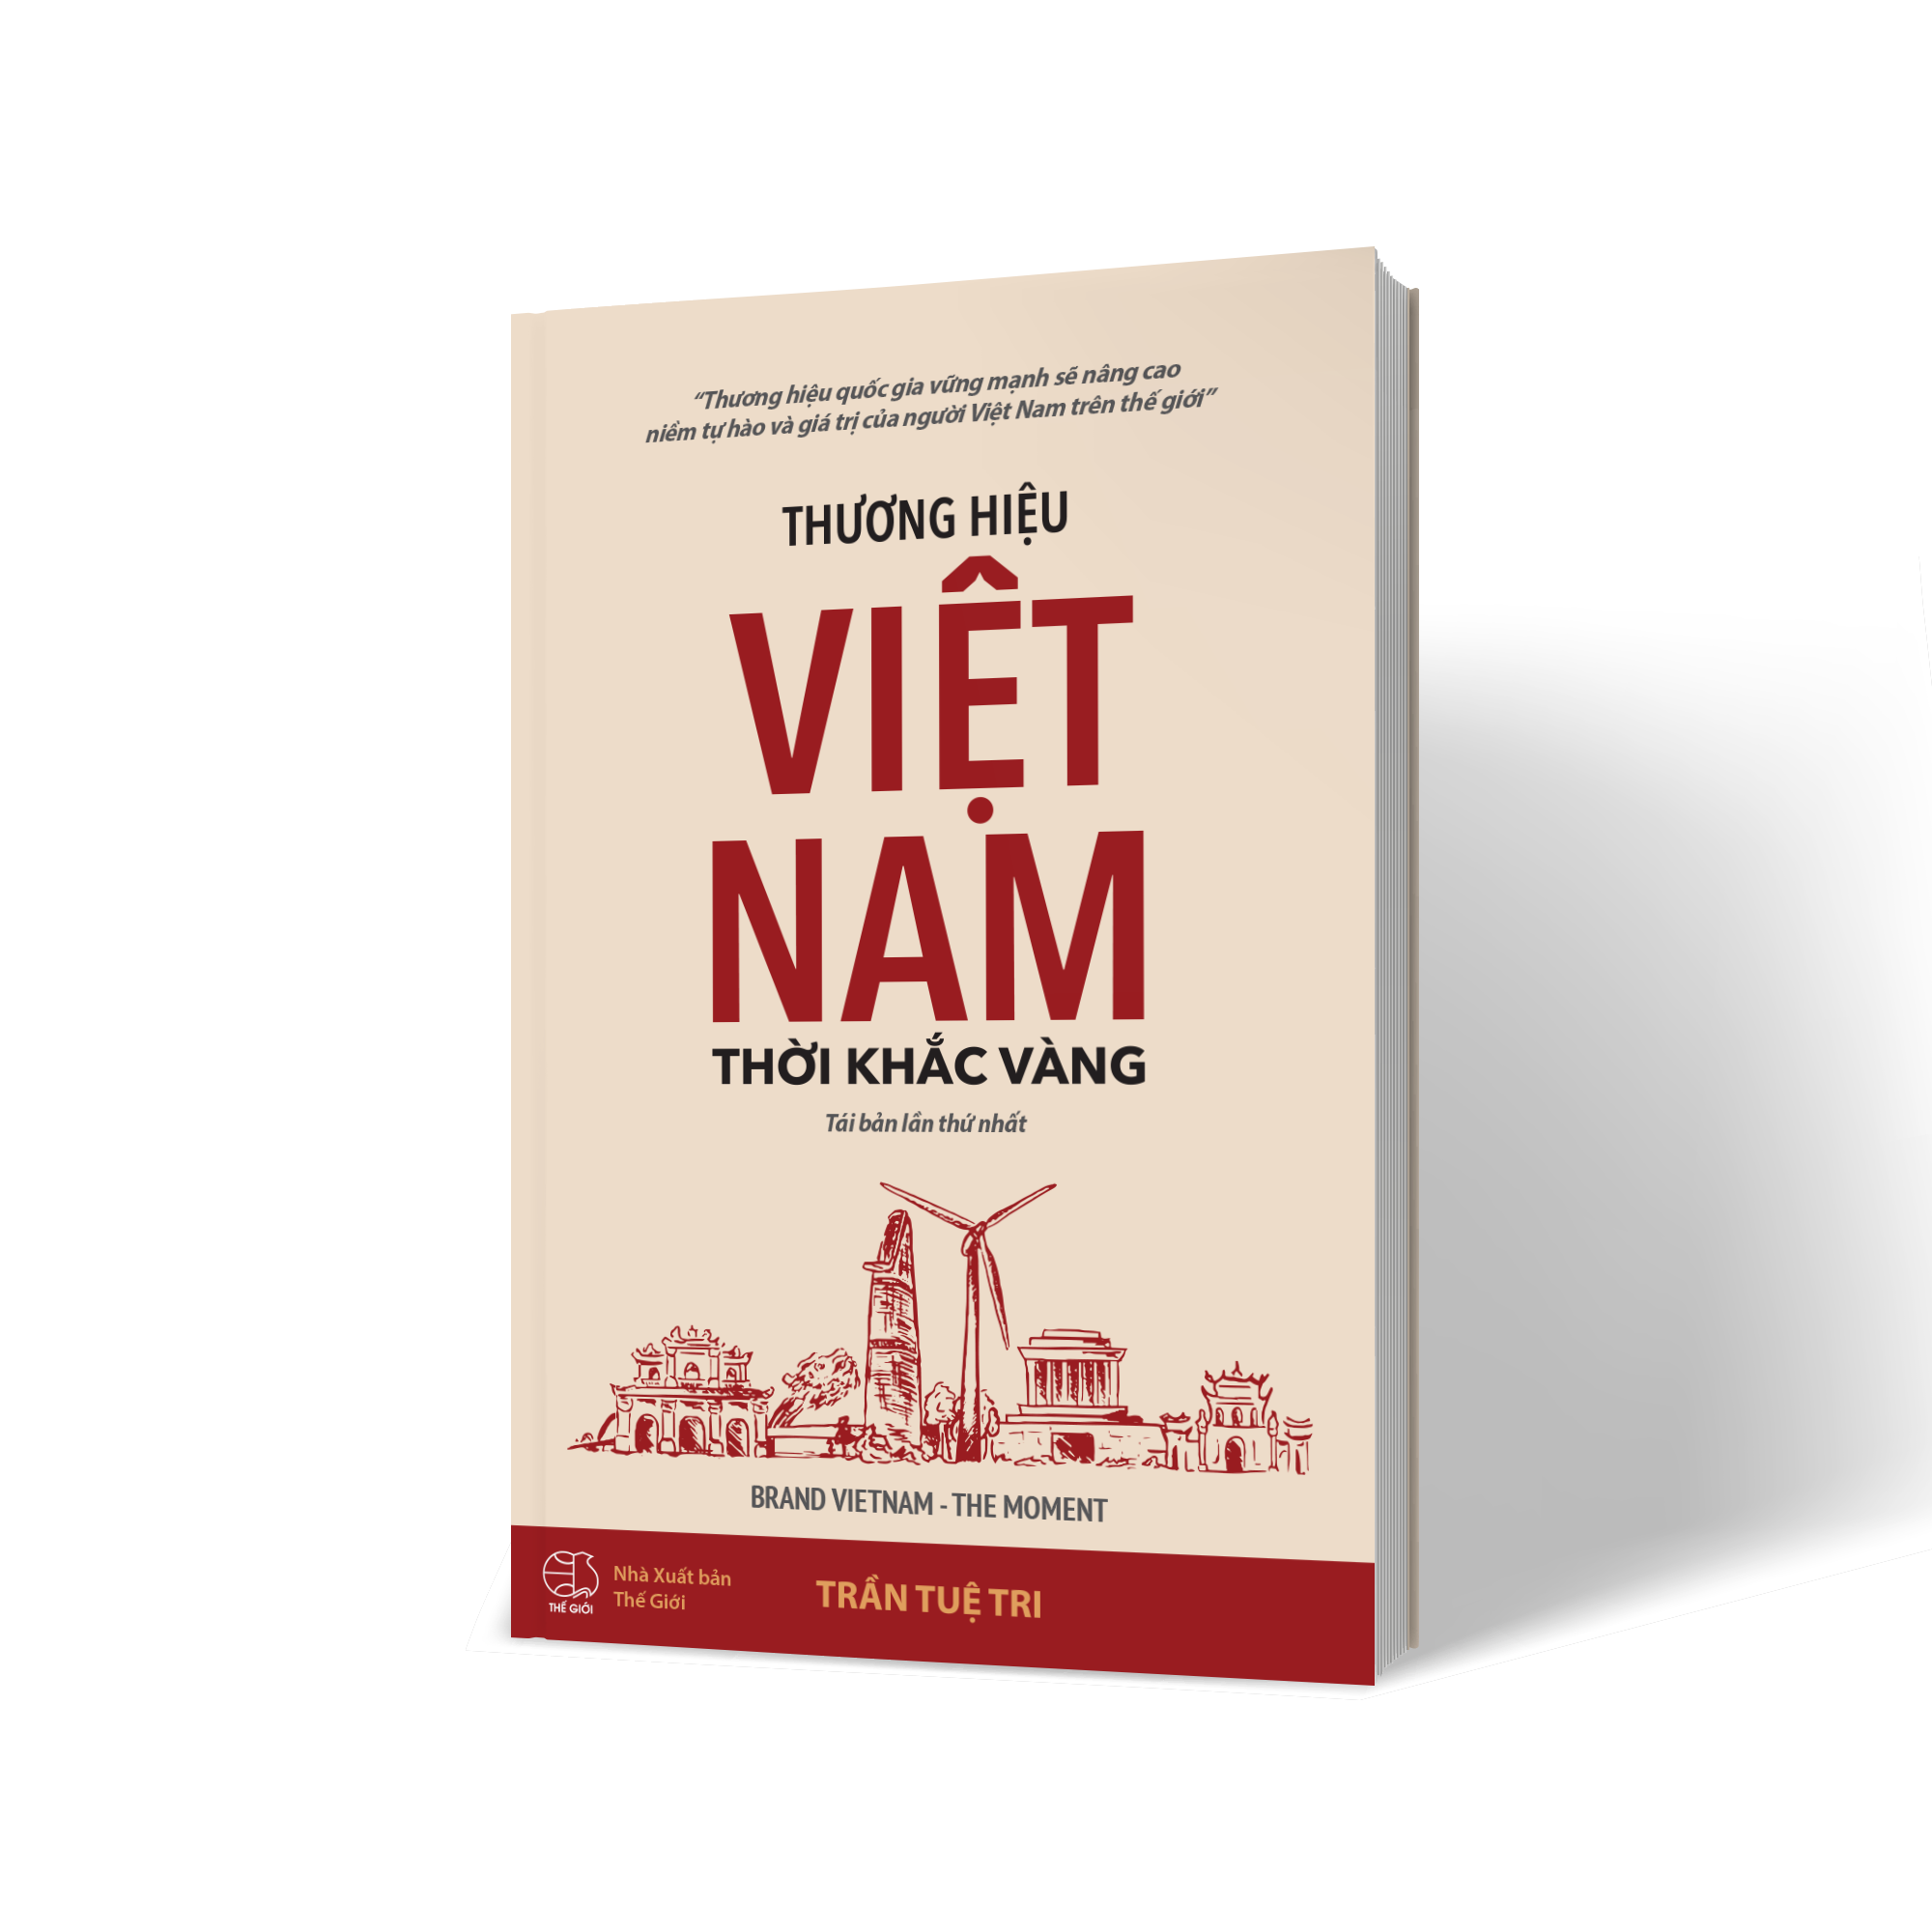 THƯƠNG HIỆU VIỆT NAM - THỜI KHẮC VÀNG (BRAND VIETNAM THE MOMENT) - Trần Tuệ Tri - (bìa mềm)